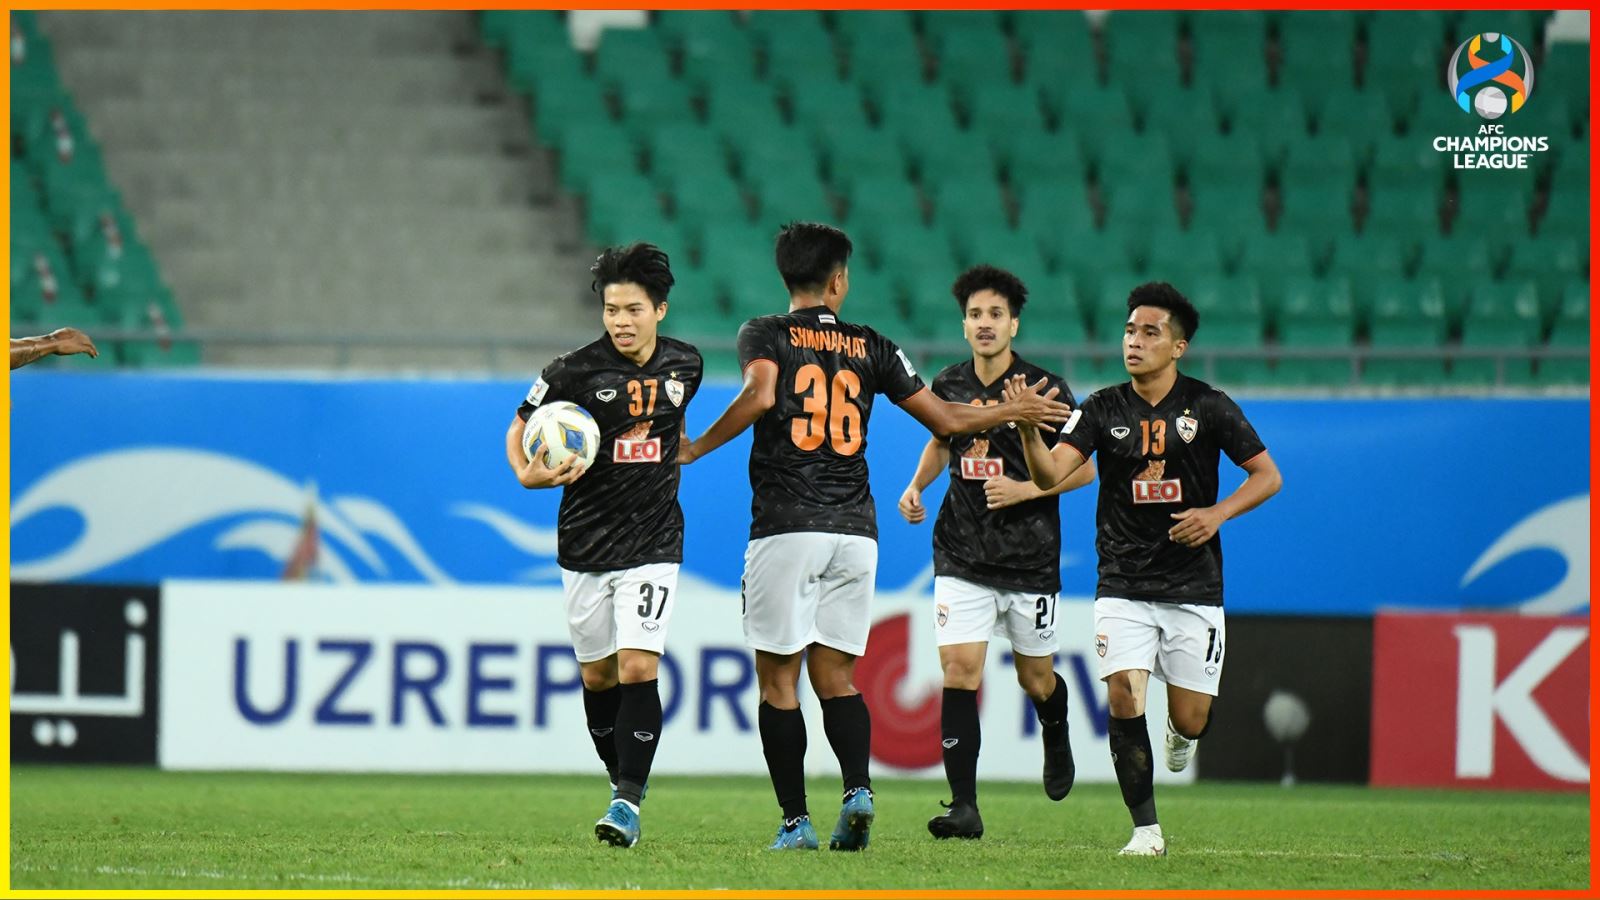 Tuyển thủ Thái Lan Punya vào sân từ ghế dự bị và có bàn gỡ 1-2 cho Chiangrai United trước Jeonbuk Hyundai. Ảnh: AFC